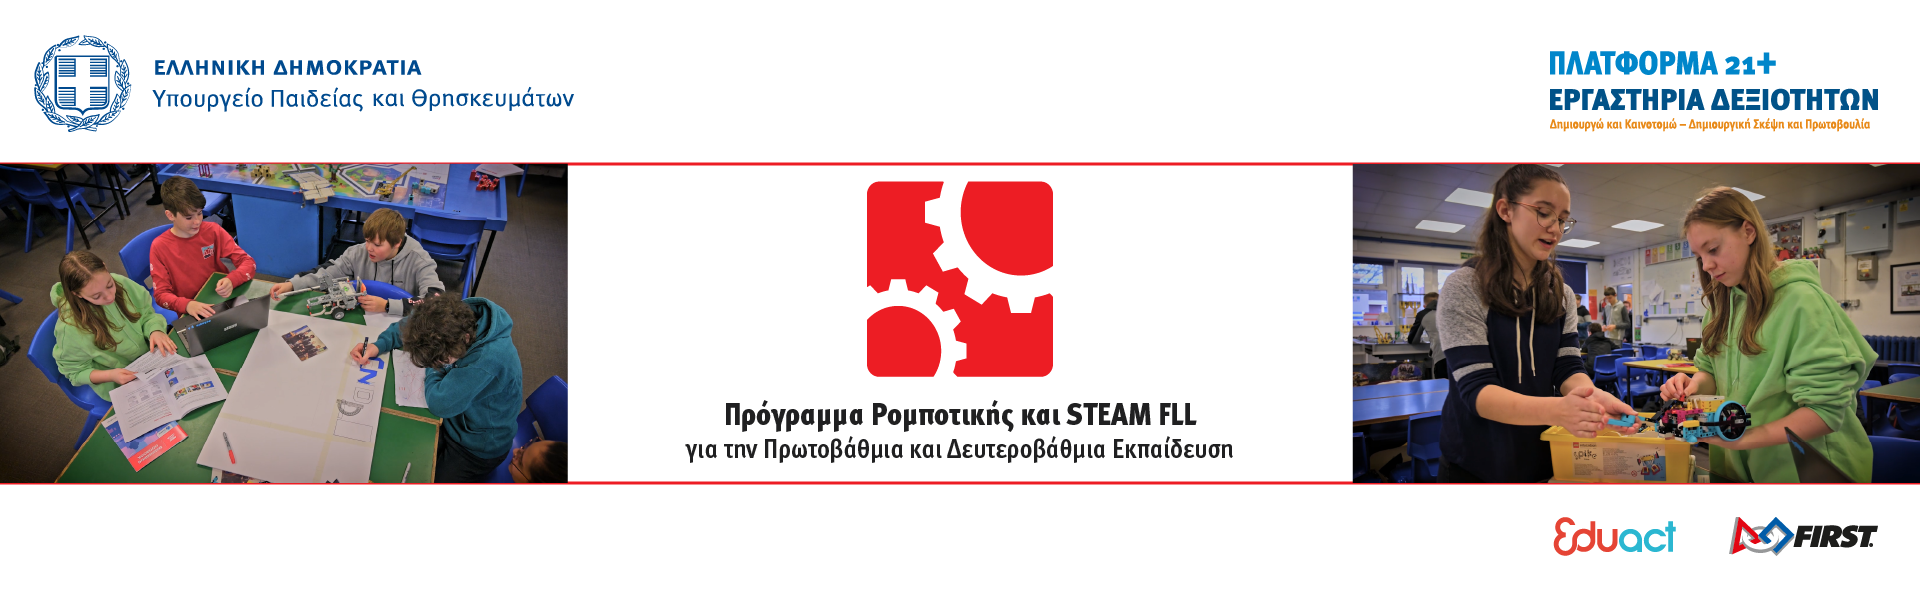 Δημοτικό Σχολείο Σκουροχωρίου: Πρόγραμμα Ρομποτικής και STEAM FLL – GAME CHANGERS (photos)